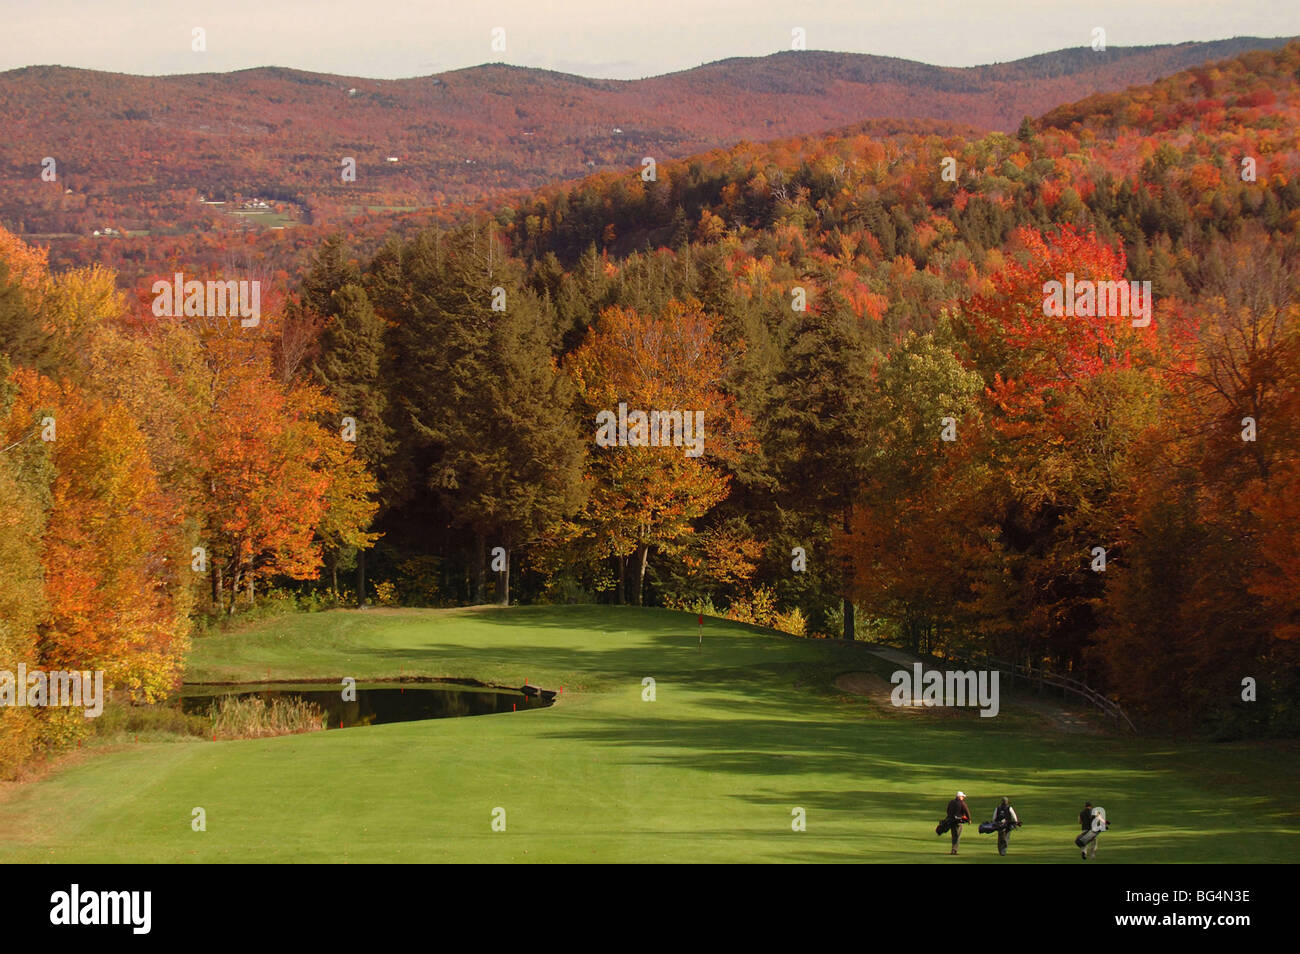 Gli amanti del golf portano le loro borse come loro come si avvicinano il verde come essi svolgono durante la caduta delle foglie di stagione in Warren, Vermont Foto Stock